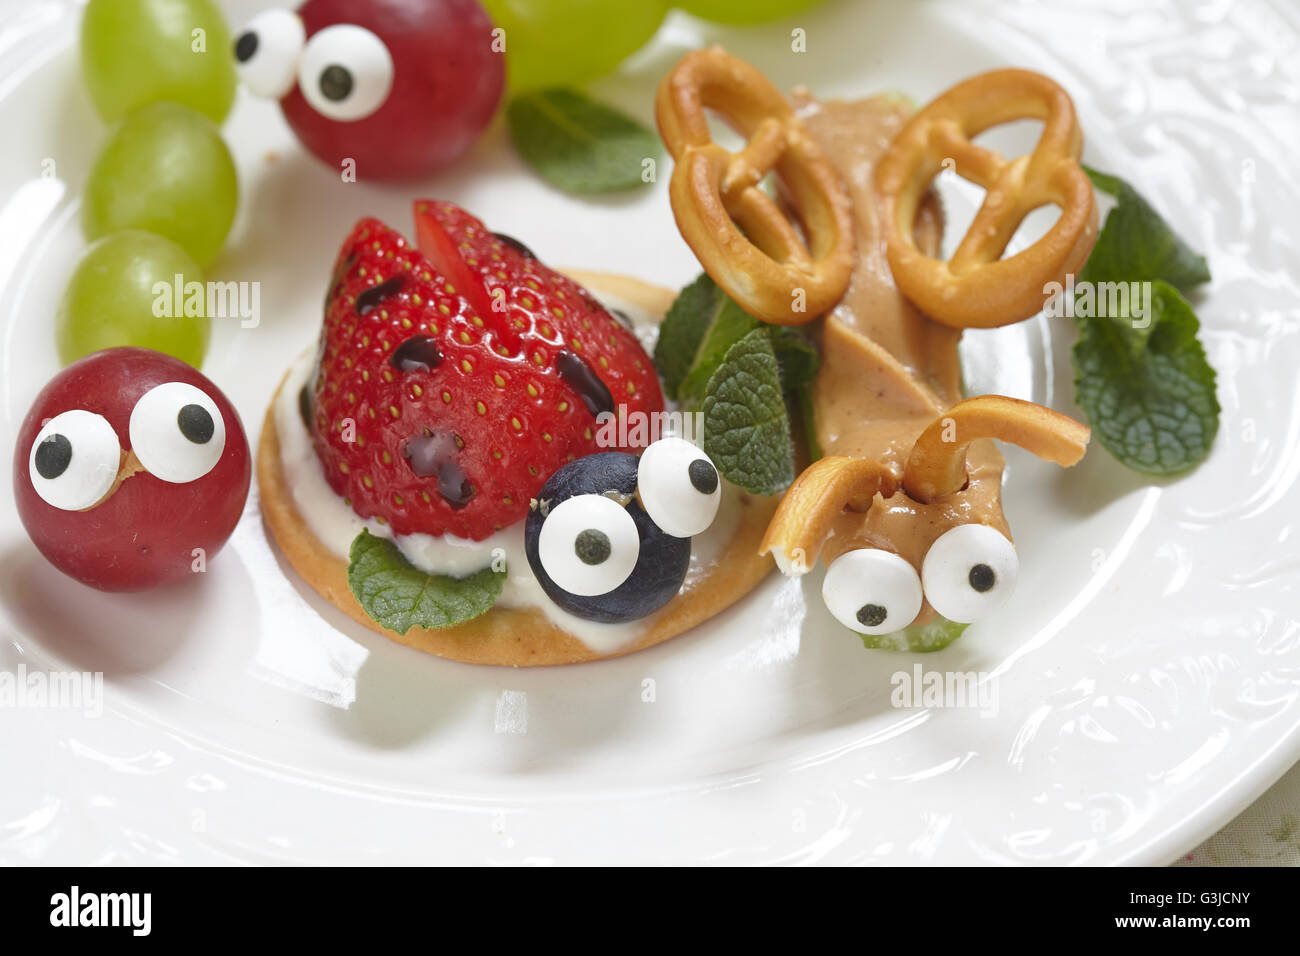 Lustige Käfer aus Trauben, Beeren und Brezeln Stockfotografie - Alamy